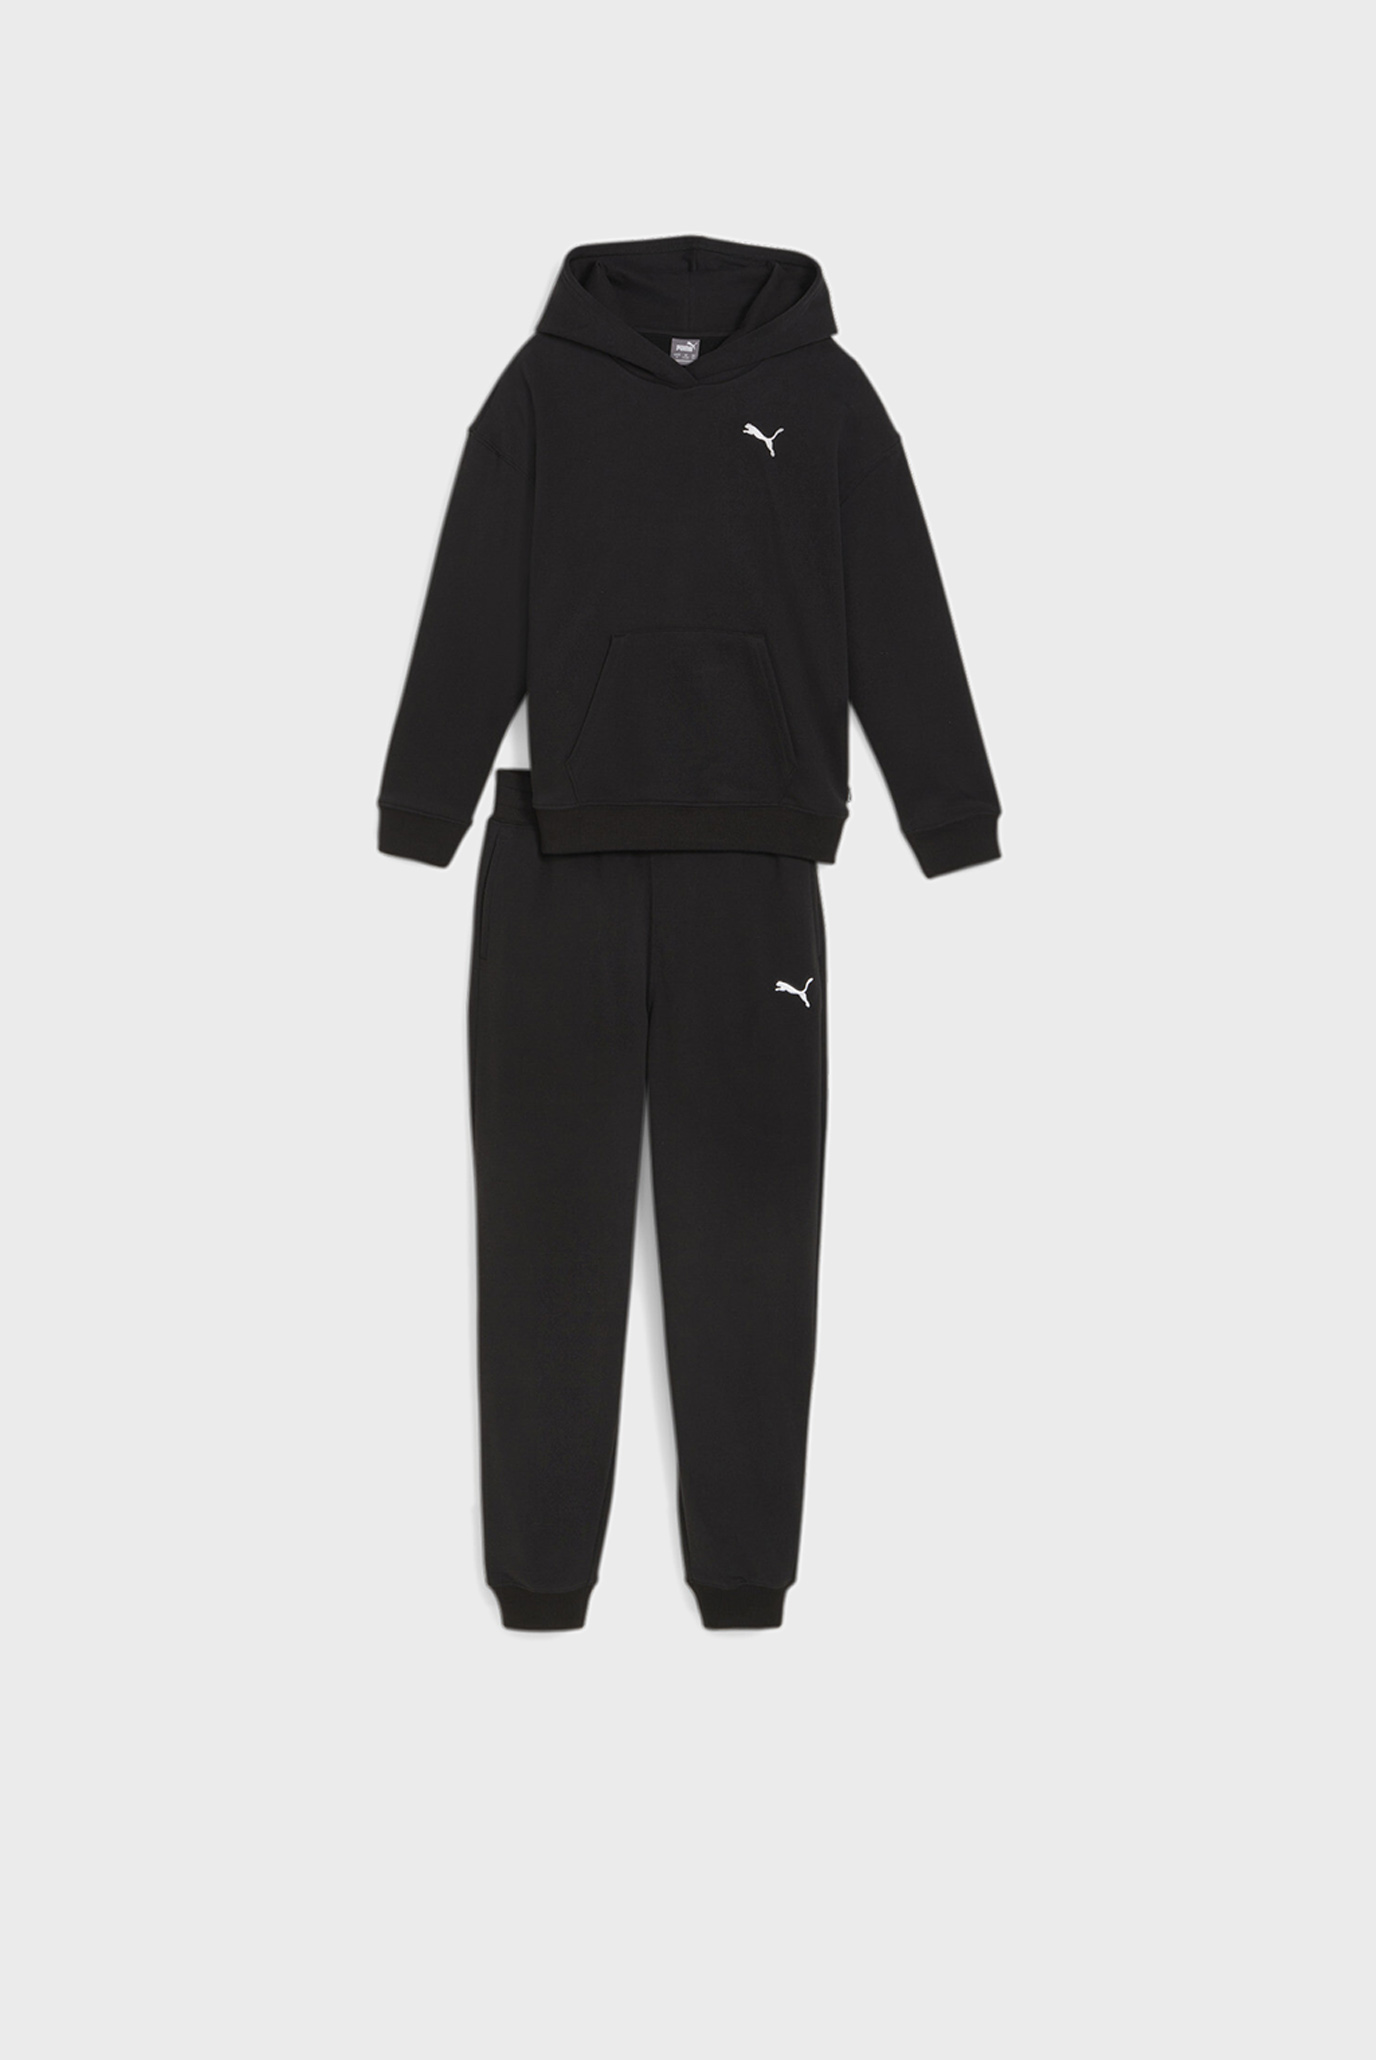 Детский черный спортивный костюм (худи, брюки) Girls' Loungewear Suit 1